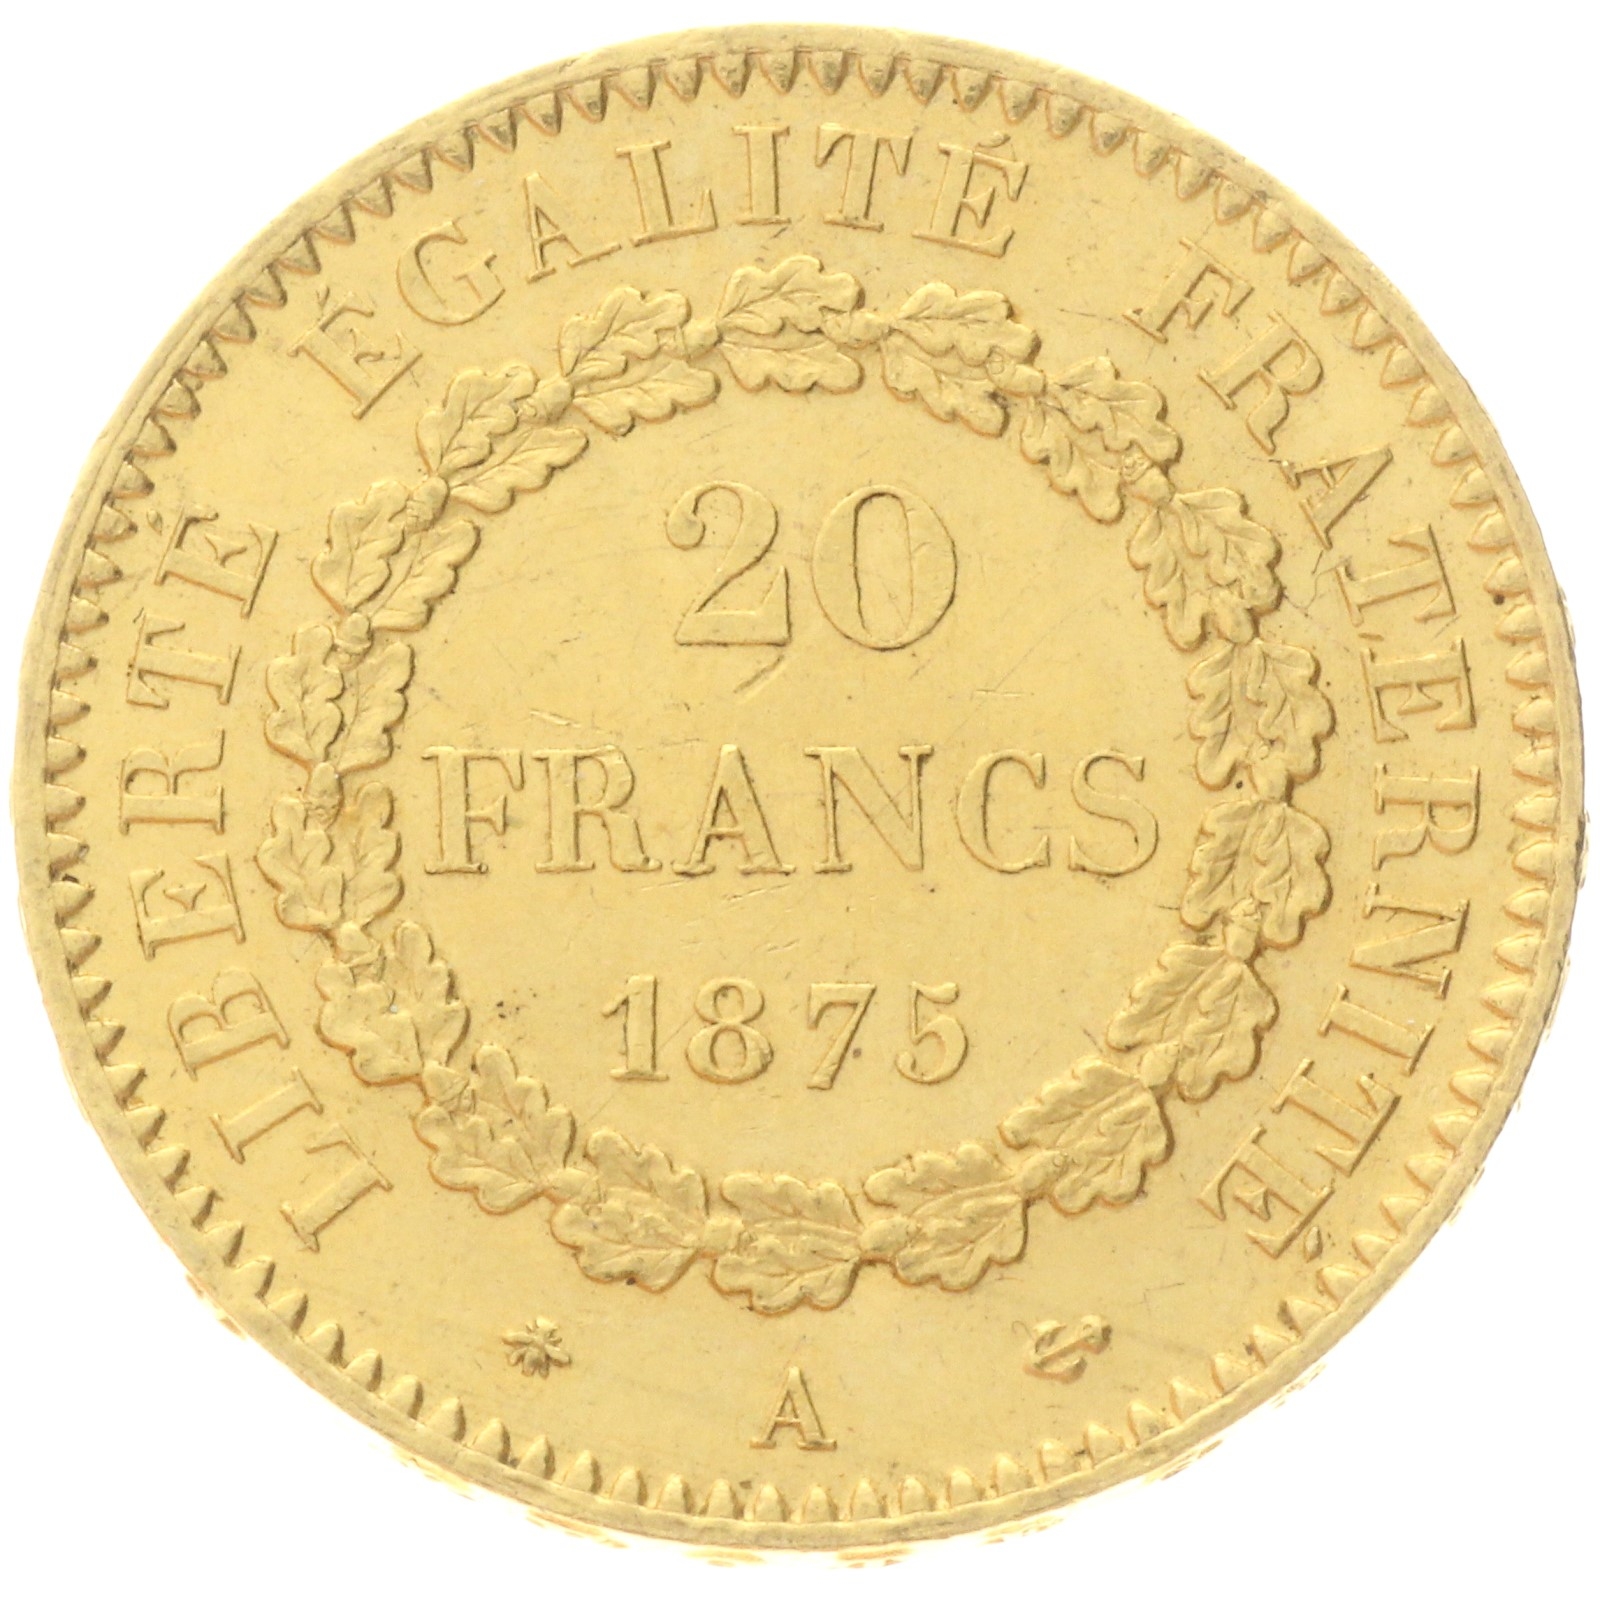 France - 20 francs - 1875 - A 